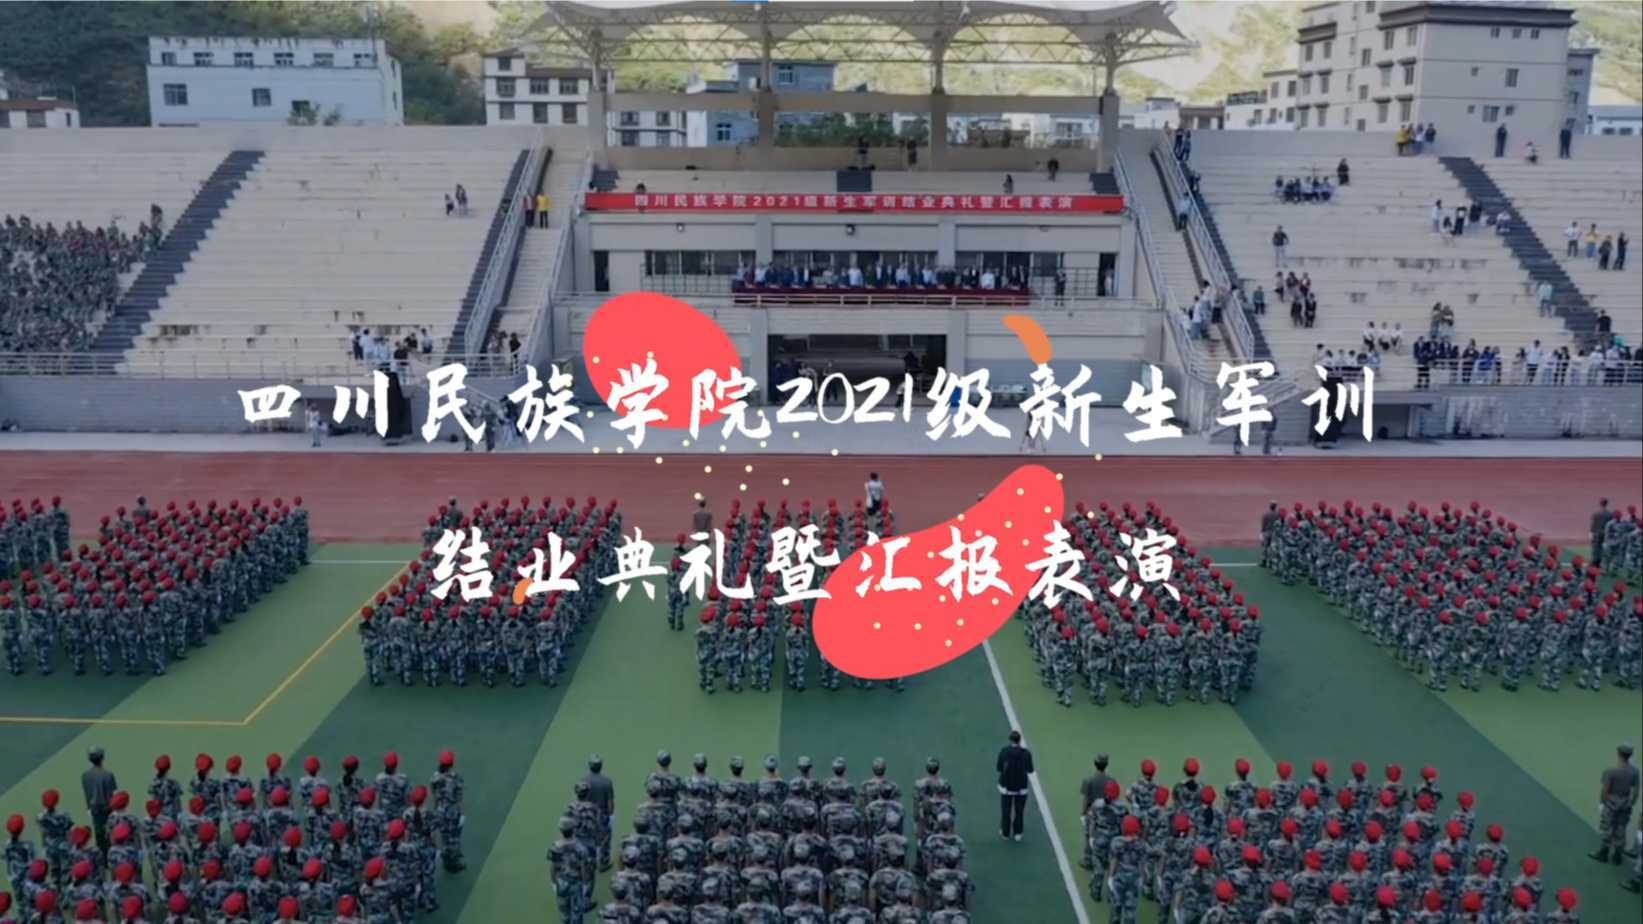 四川民族学院2021级新生军训汇演成片